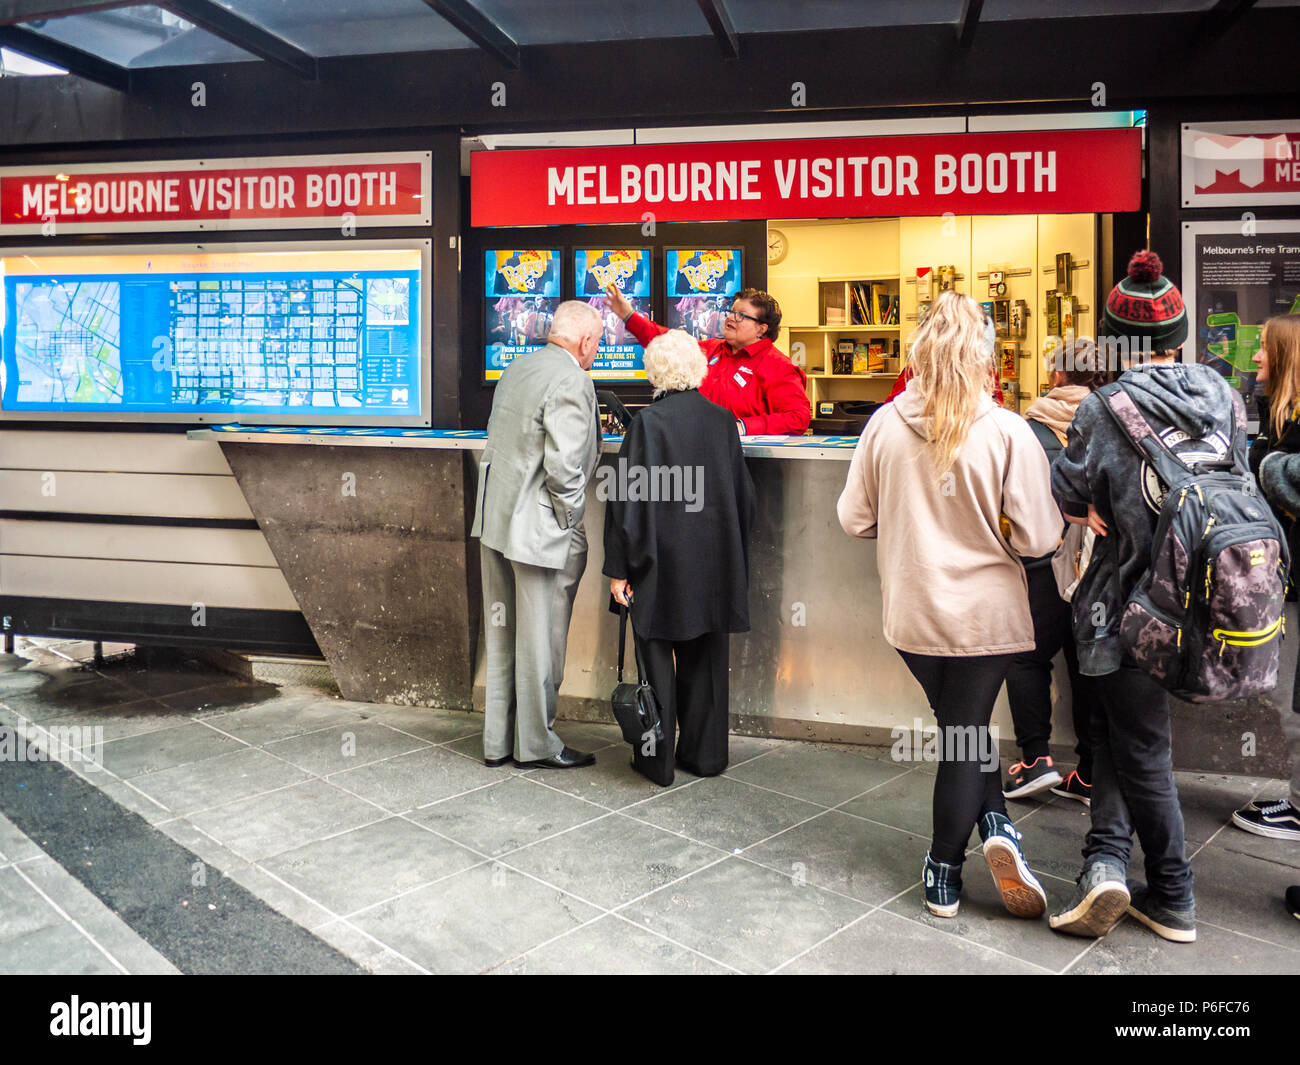 Aider les touristes du personnel au Melbourne Visitor Booth. Le stand est animé par des bénévoles formés et idéalement situé dans le centre commercial Bourke Street. Banque D'Images